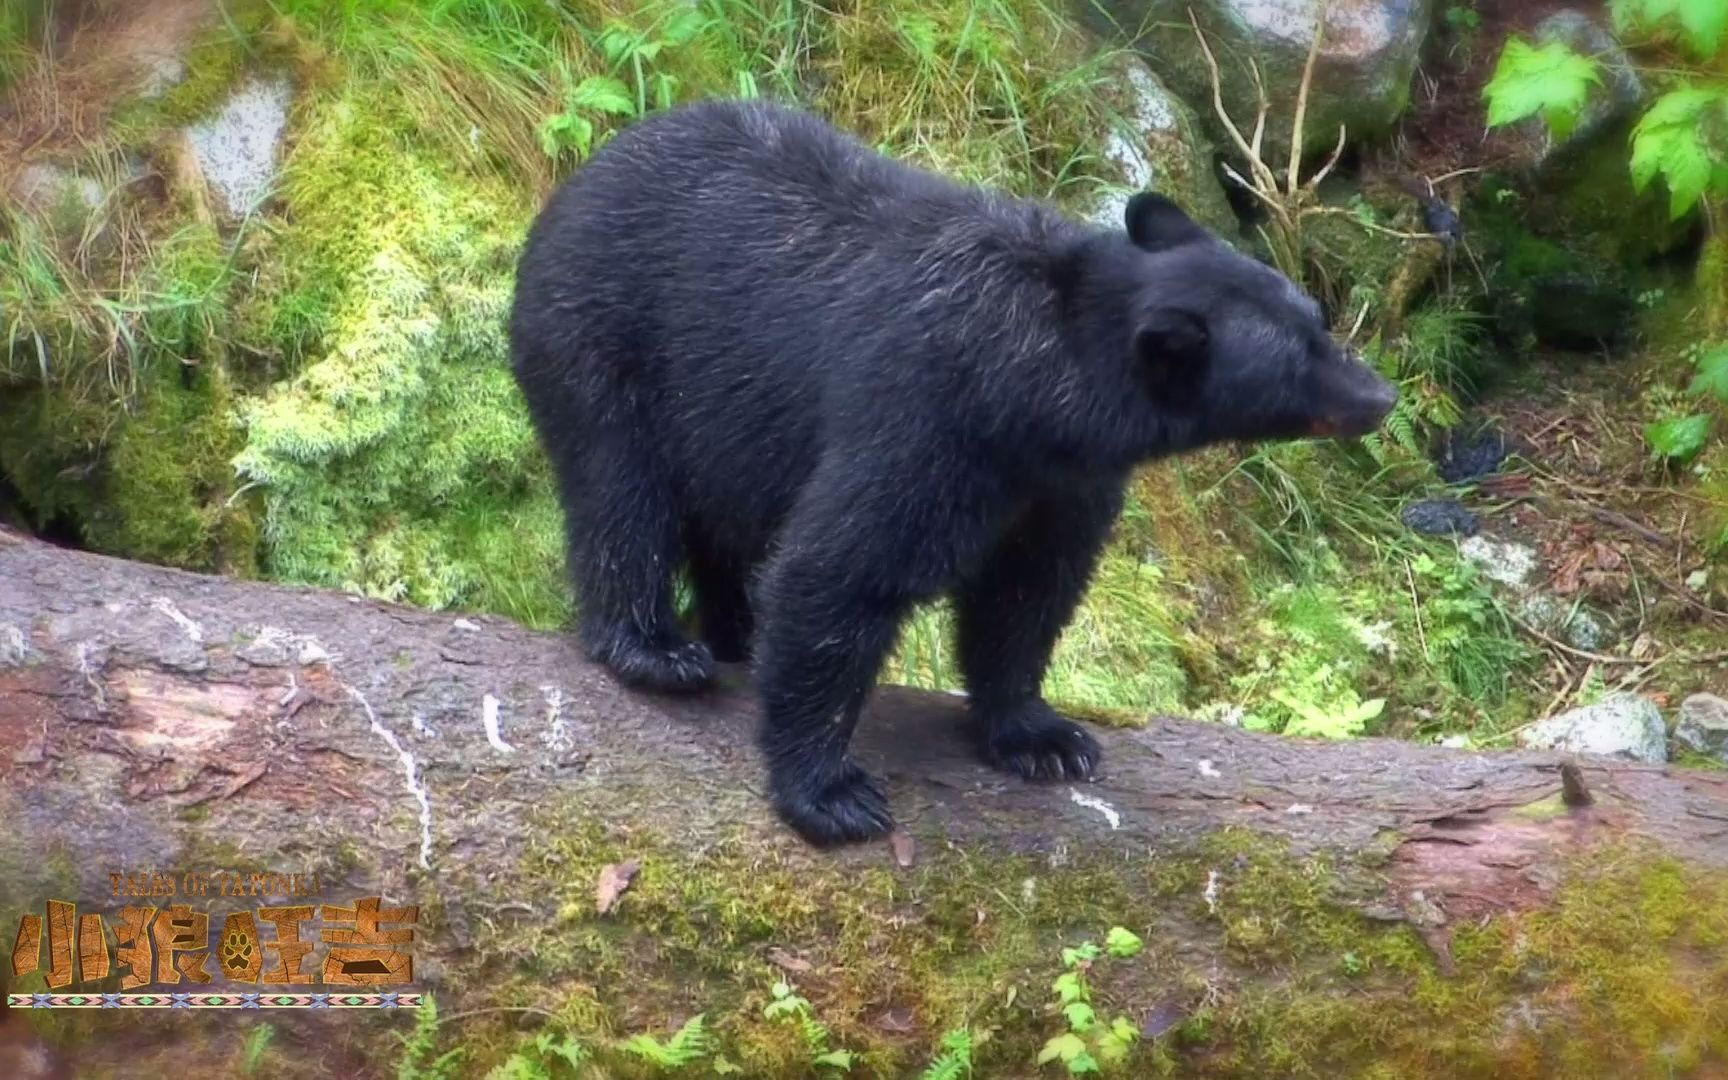 日本野生动物园发生惨剧 黑熊攻击人致死 | 大纪元